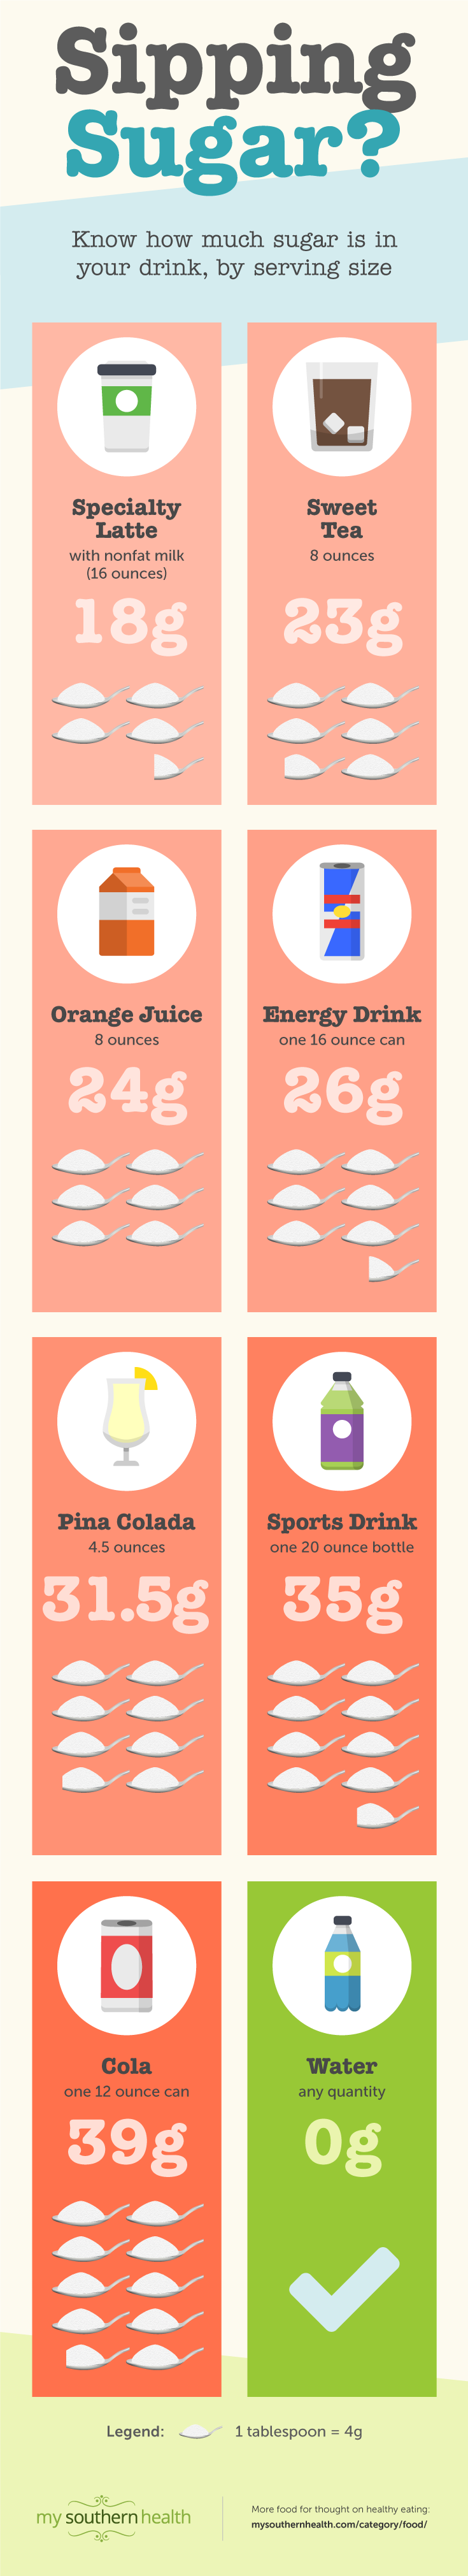 900-2902-MSH-Sugar-Beverages-Infographic-MK-V2